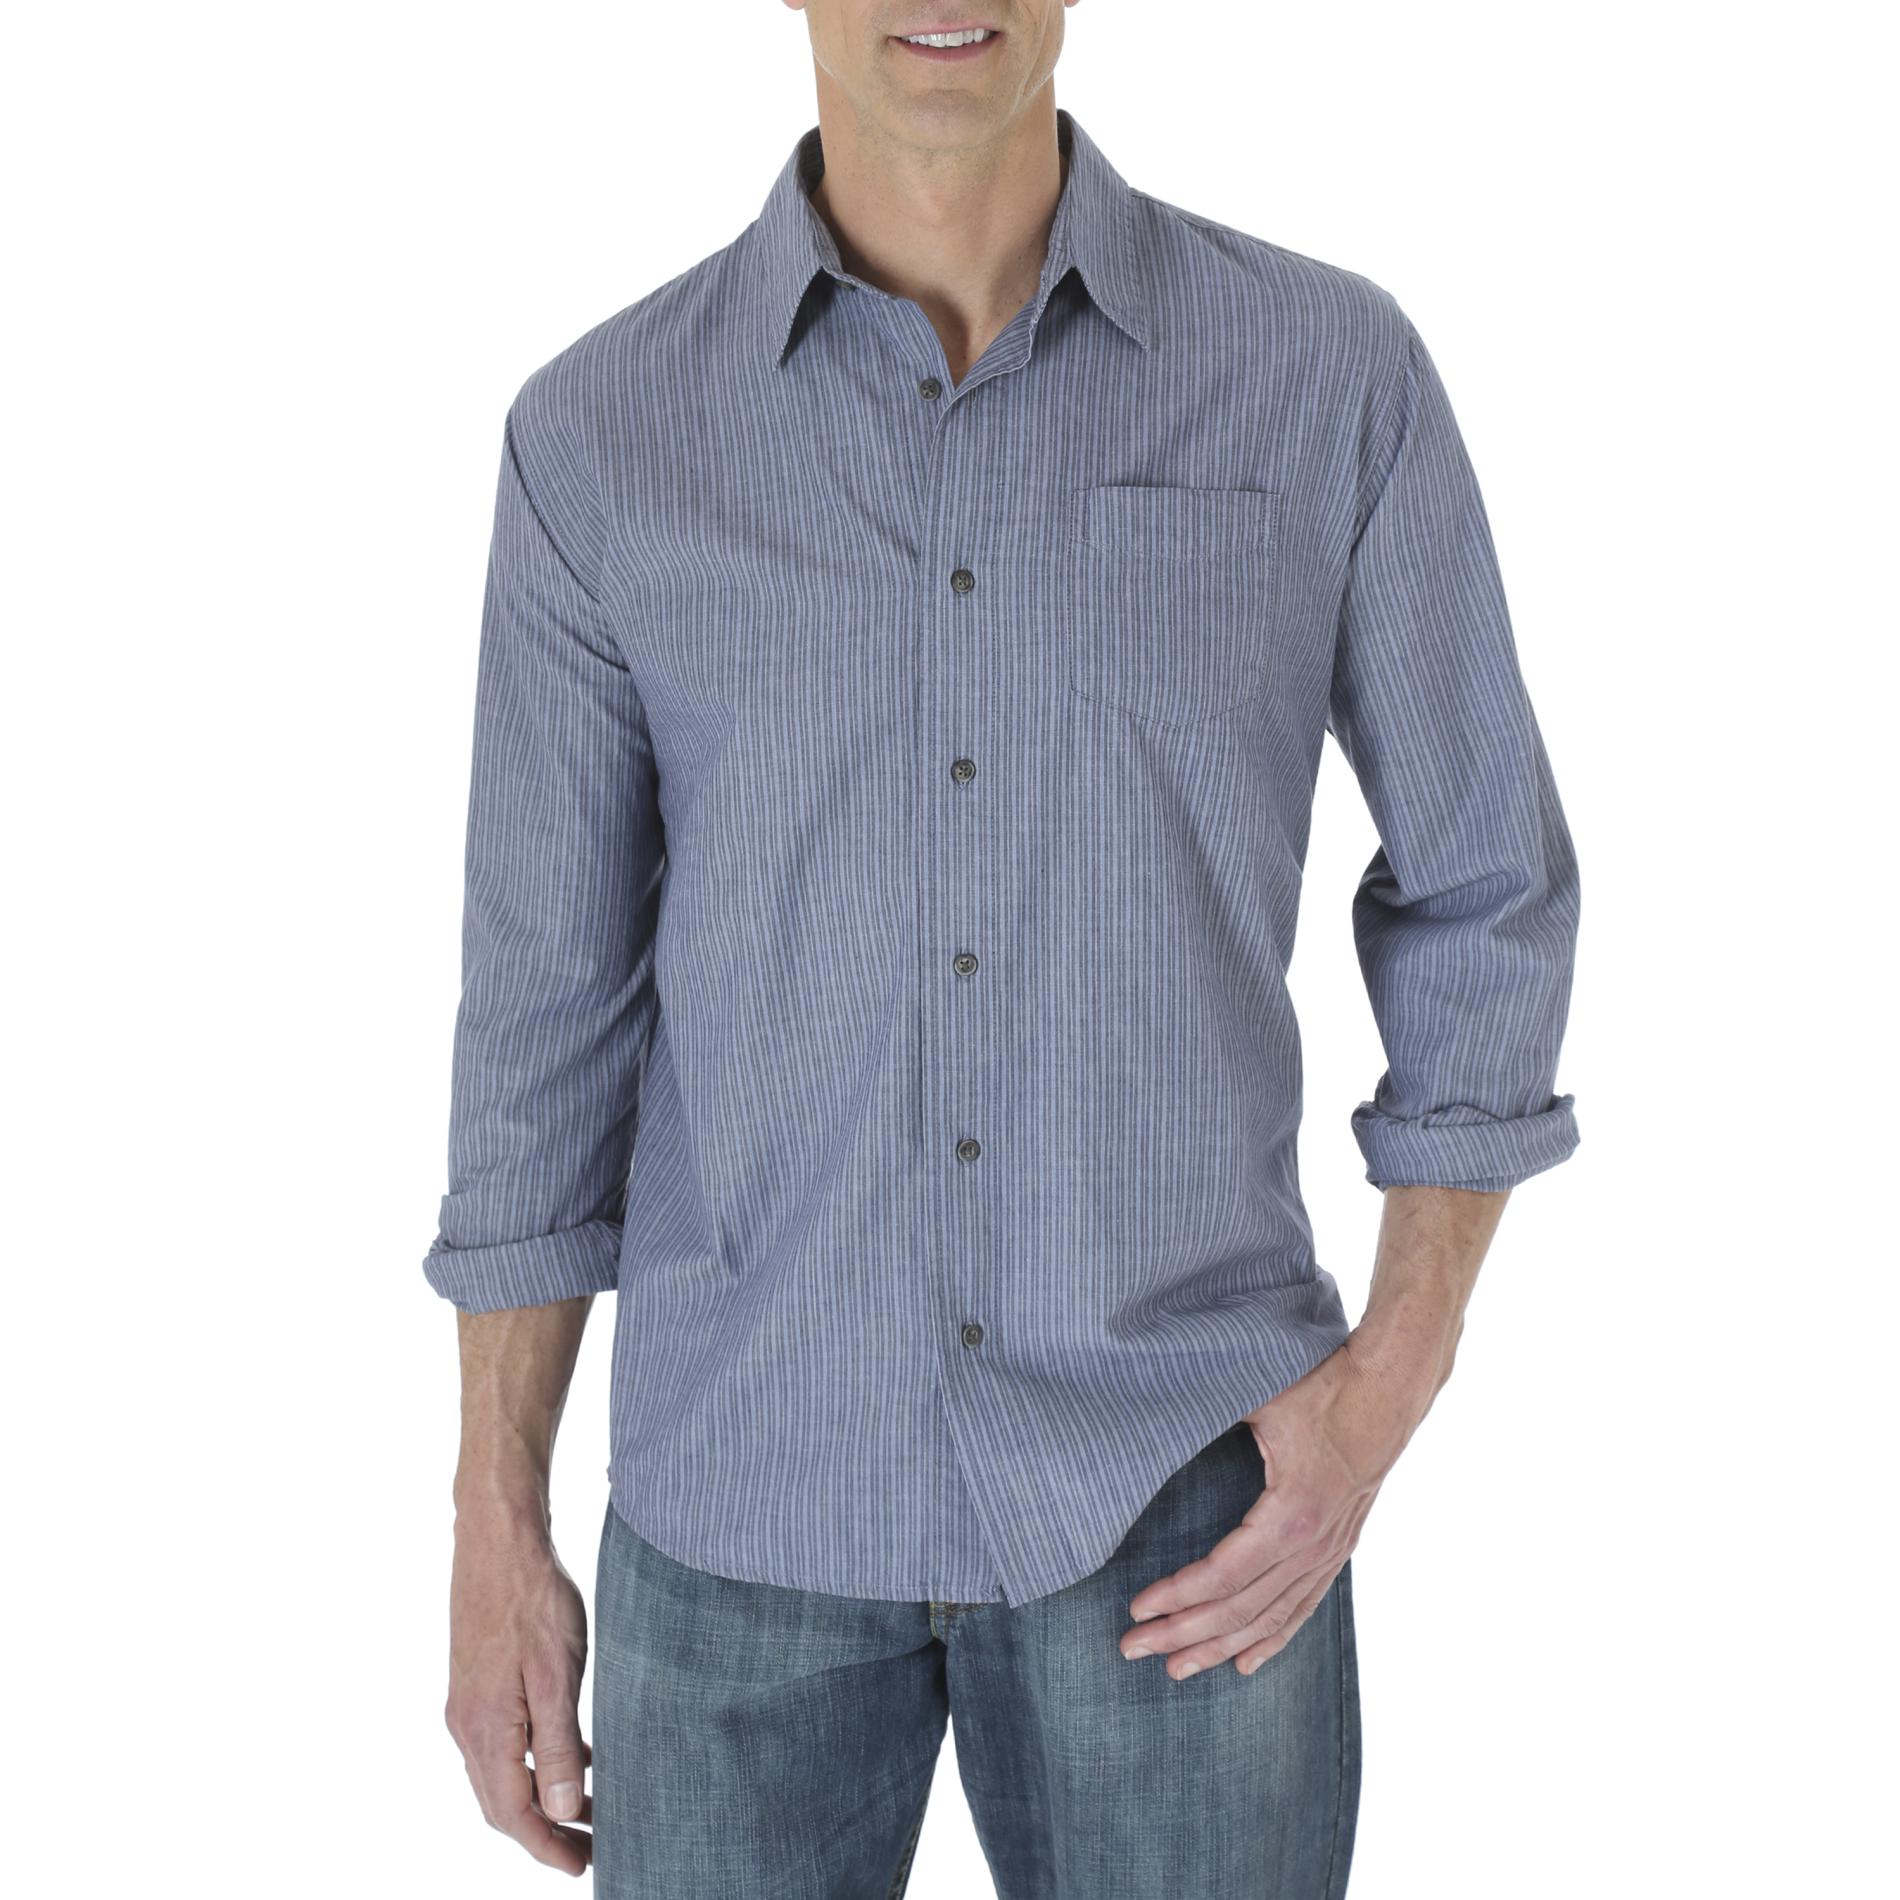 Wrangler Men's Woven Long-Sleeve Shirt - Striped